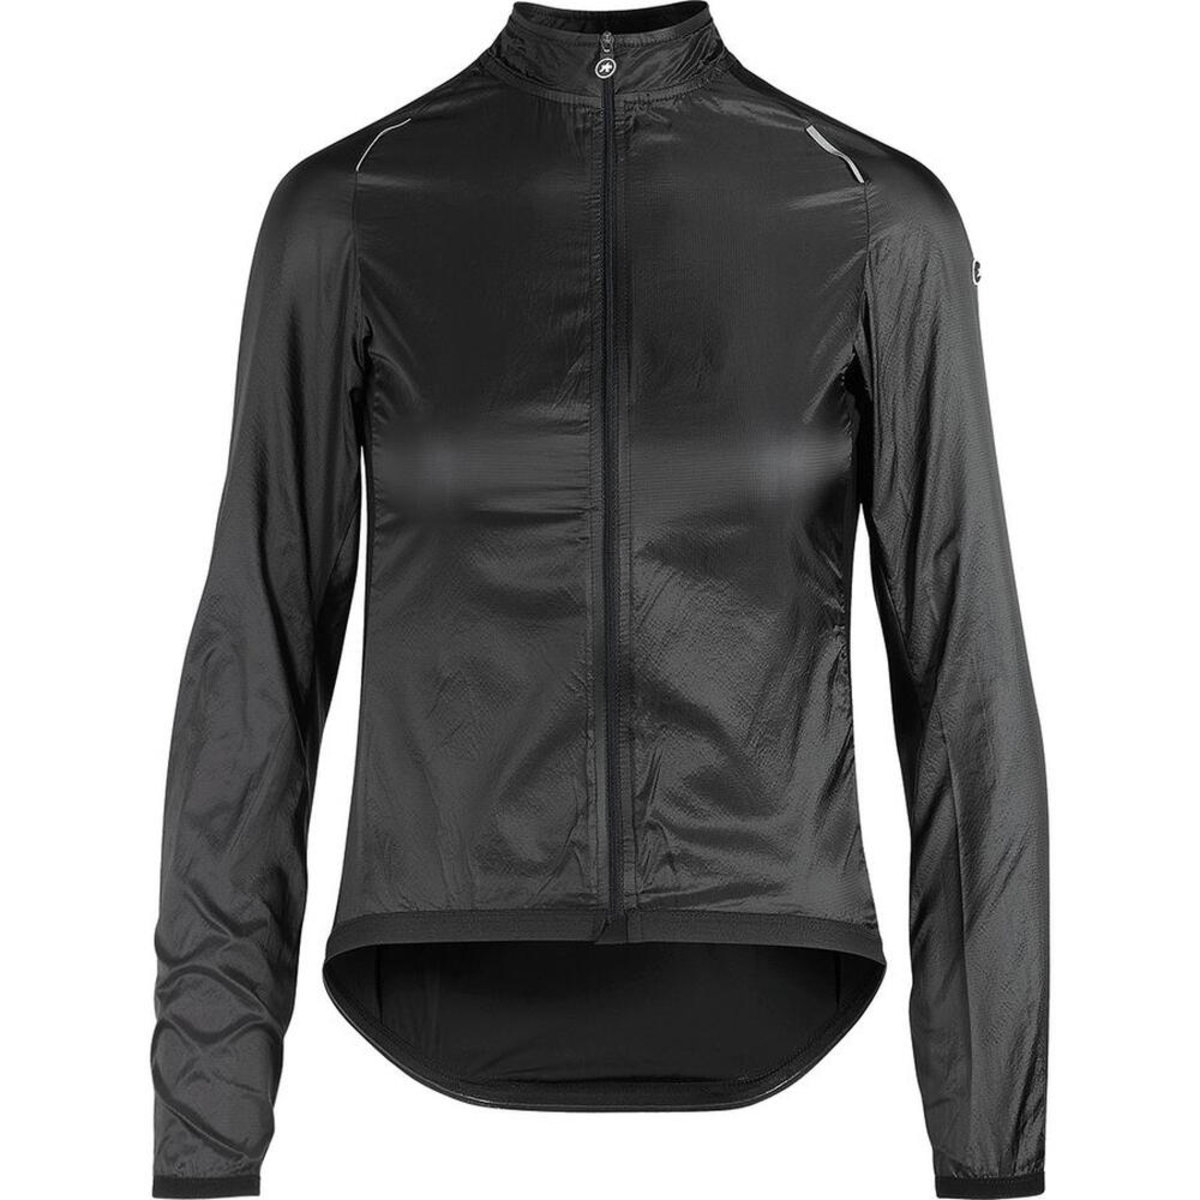 Куртка ASSOS Uma GT Wind Jacket, довг. рукав, женская, чорна, XS фото 